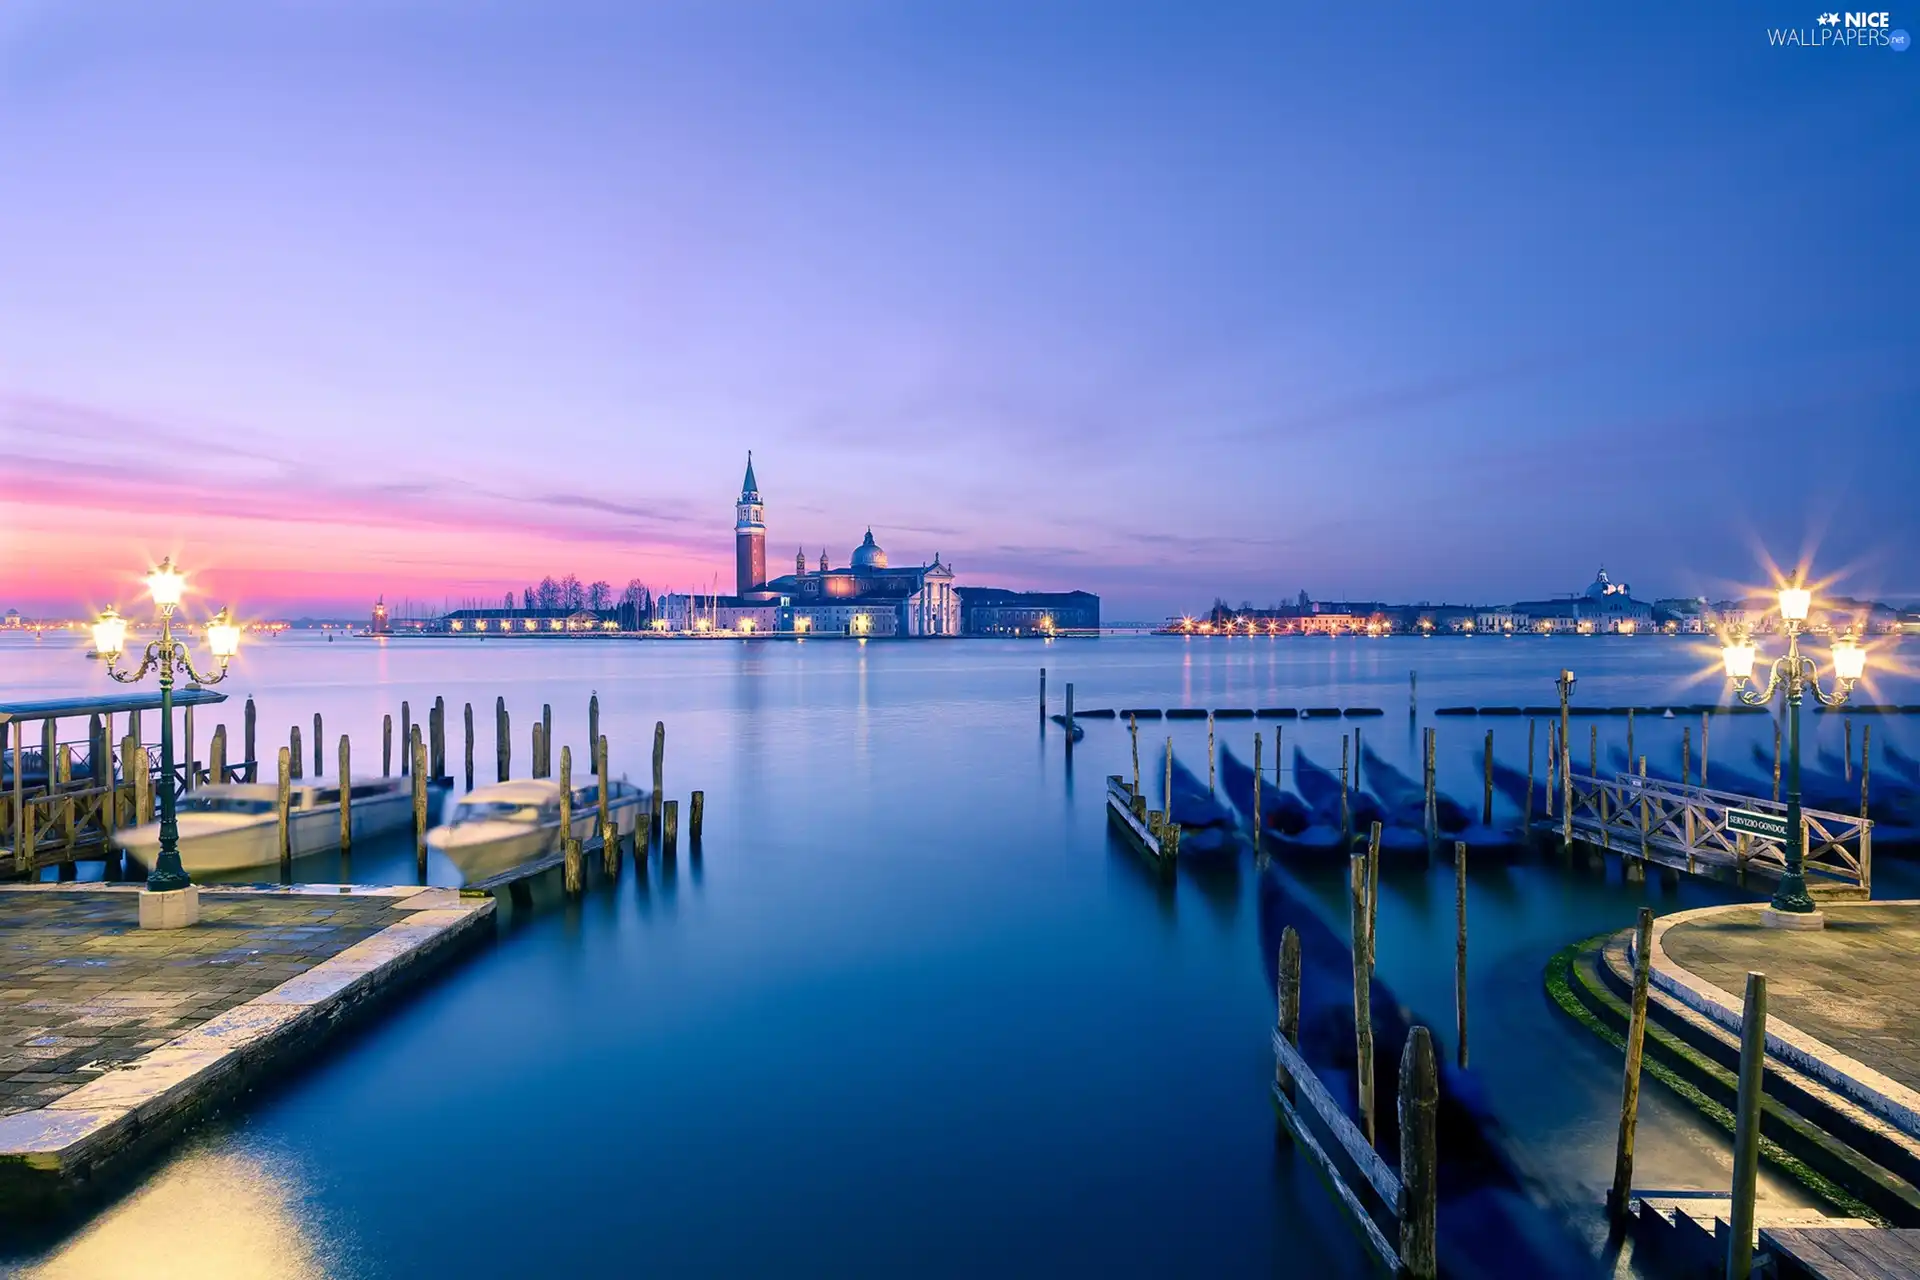 Great Sunsets, Gondolas, San Giorgio Maggiore, Italy, Venice